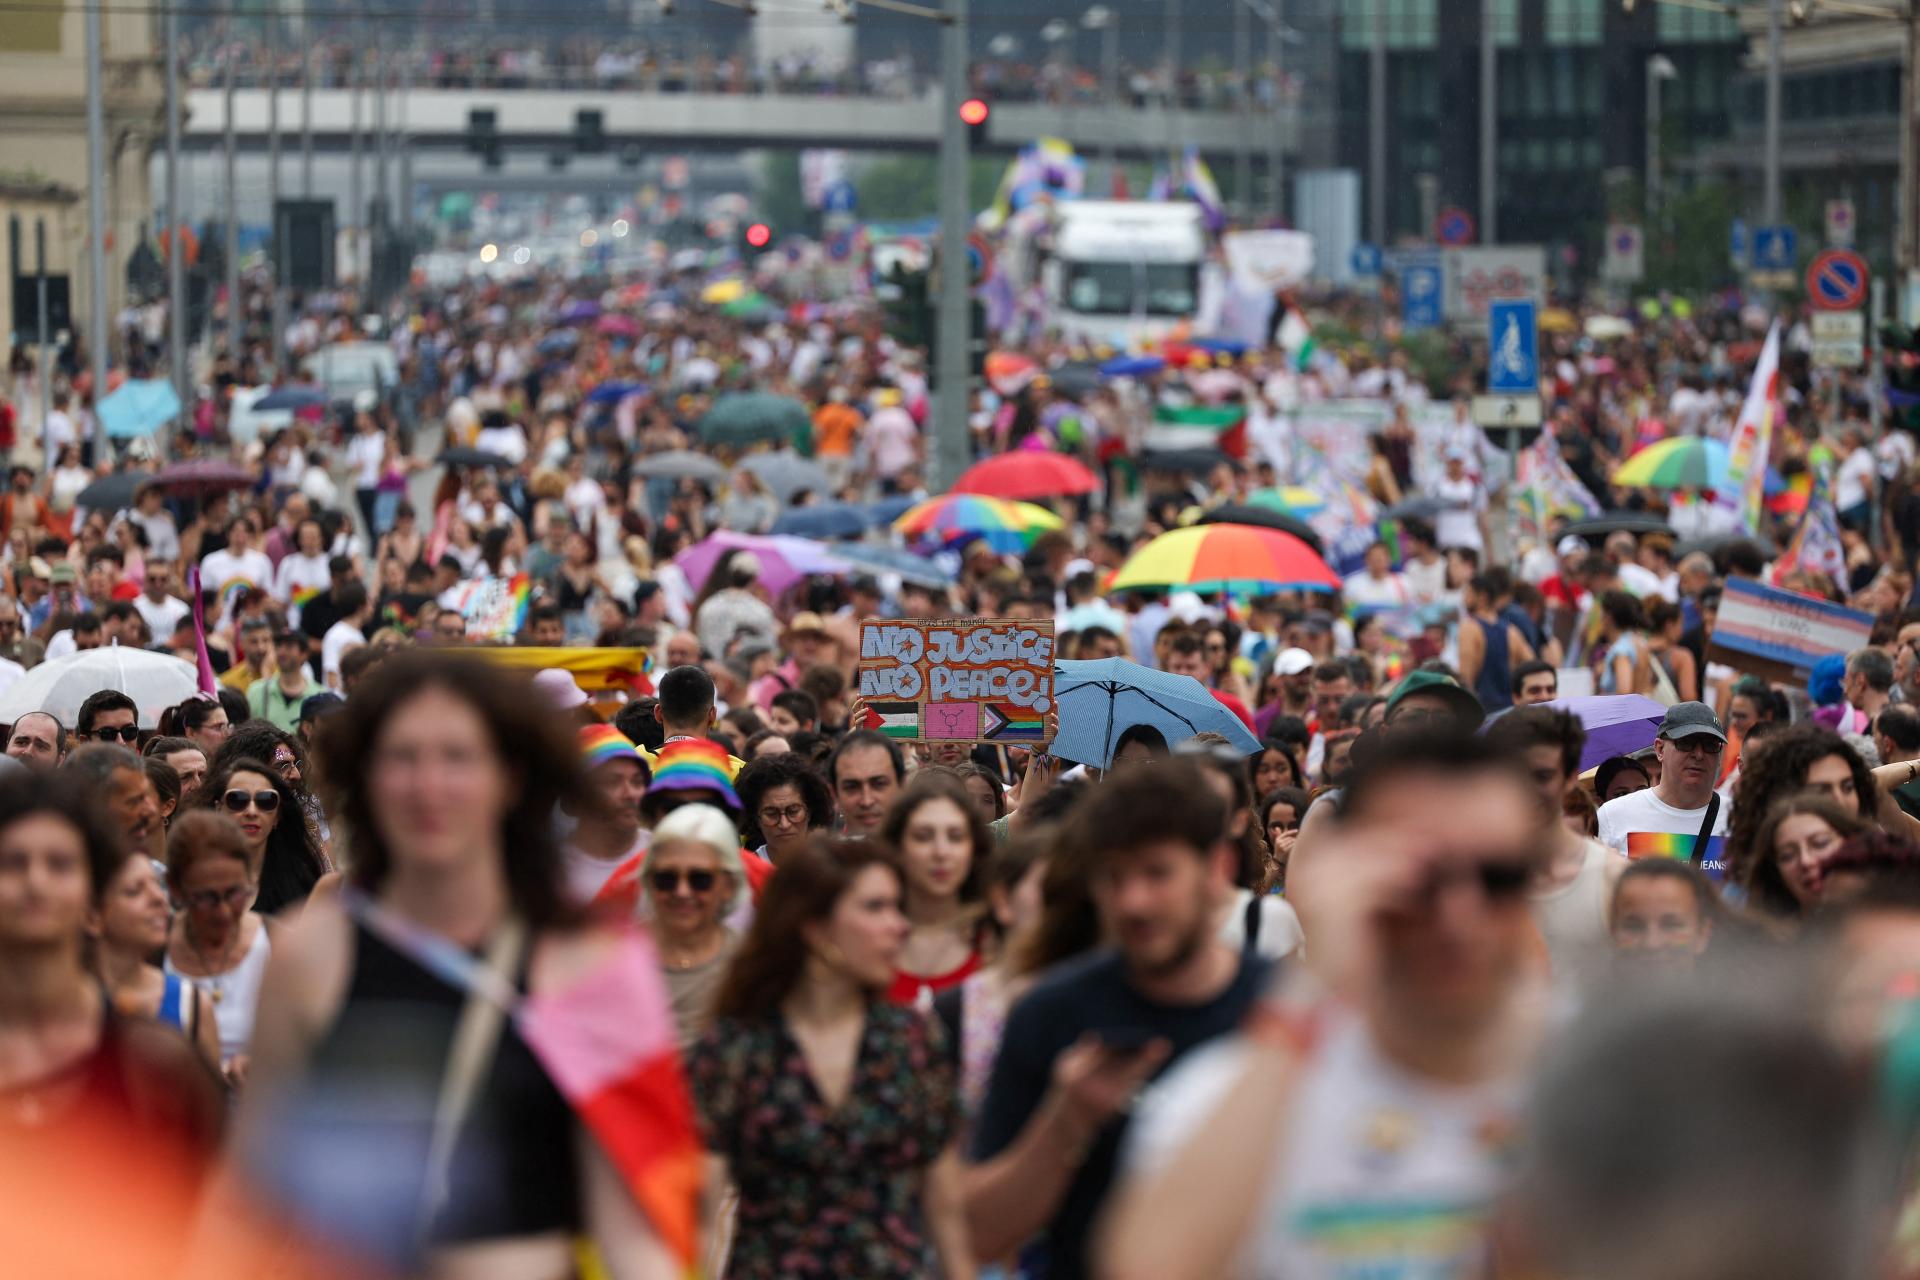 Desaťtisíce ľudí sa v Paríži zúčastnili pochodu hrdosti LGBT+. Obávajú sa, že moc preberie krajná pravica